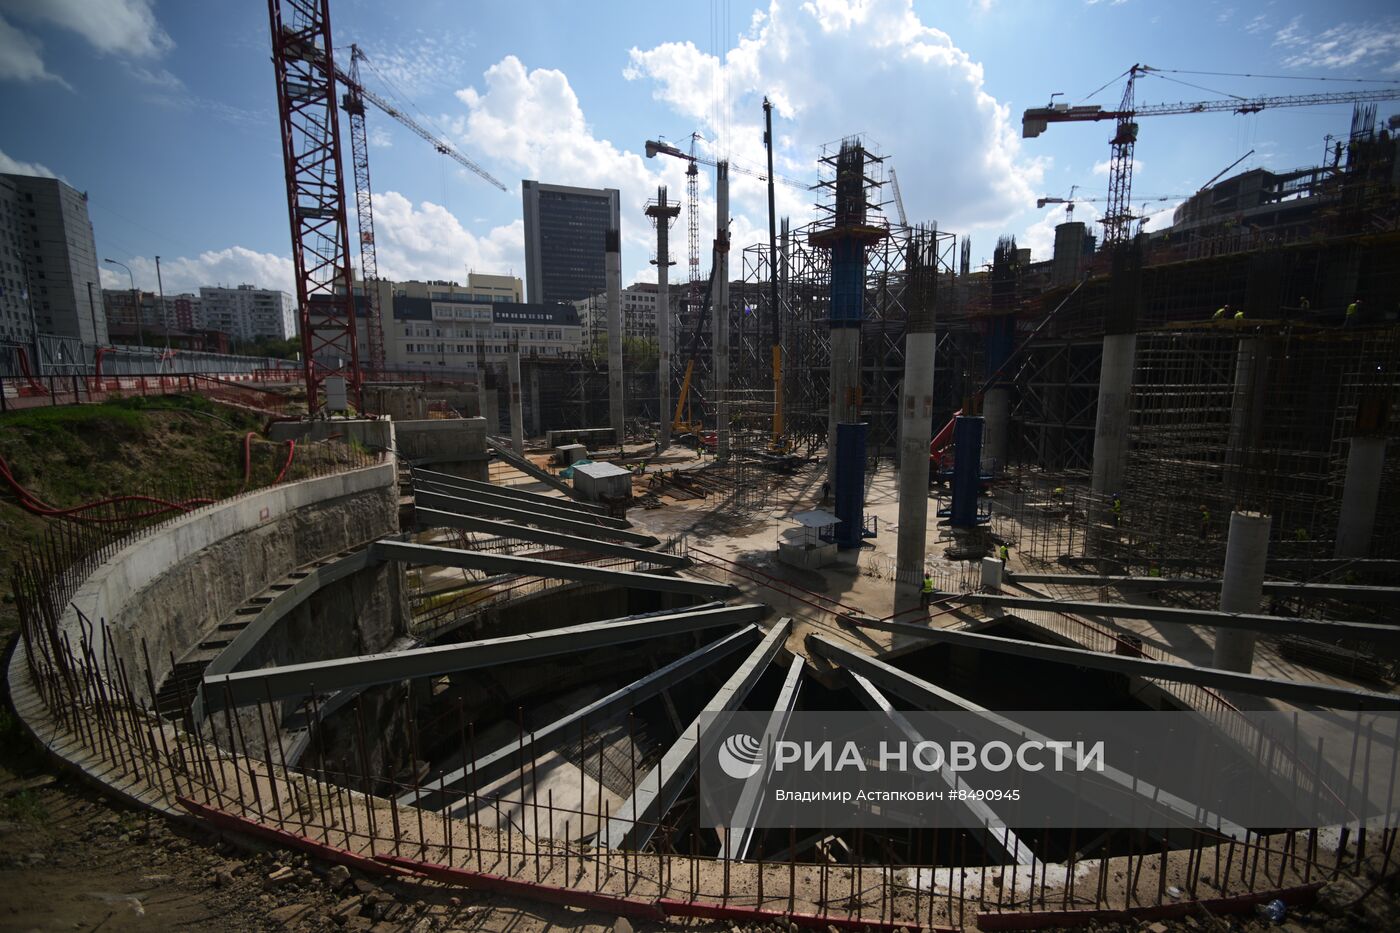 Строительство спортивного комплекса "Олимпийский"